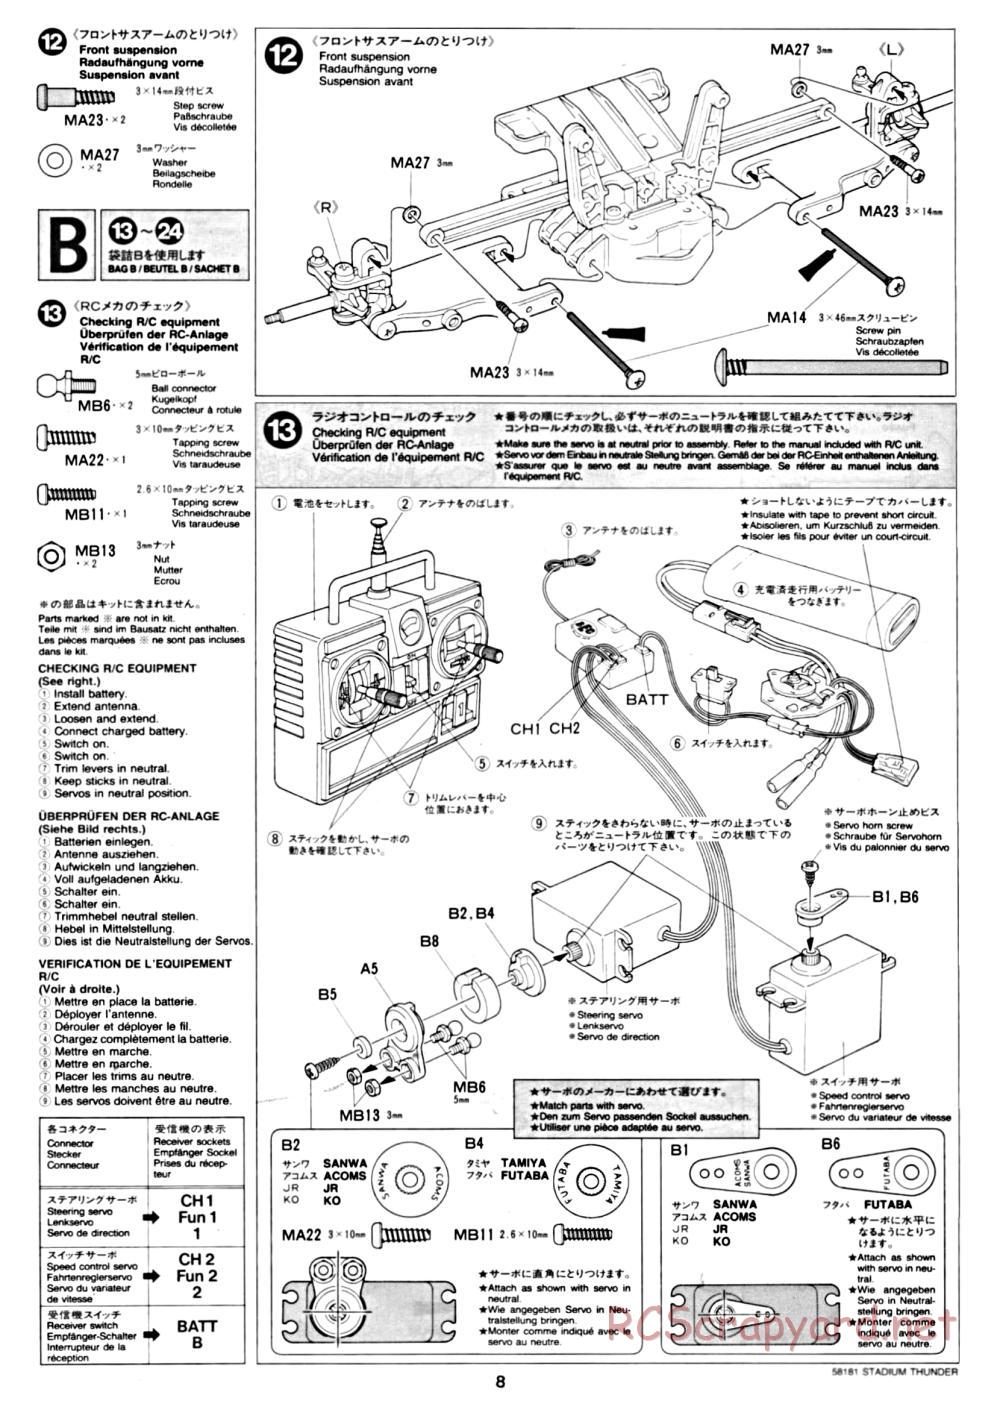 Tamiya - Stadium Thunder Chassis - Manual - Page 8